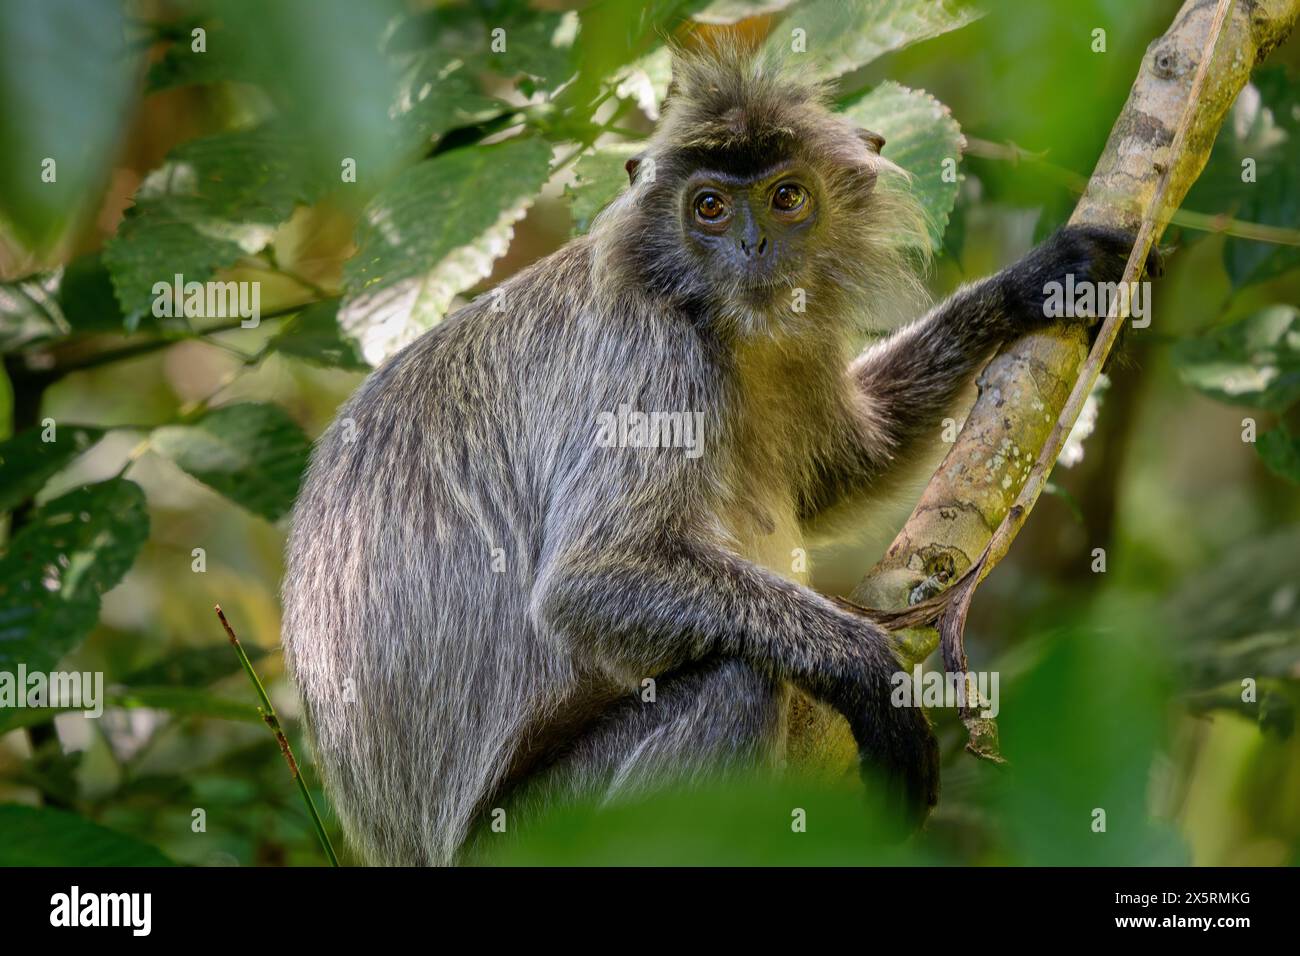 Silvered Leaf Monkey - Trachypithecus cristatus, wunderschöner Primat mit Silberfell aus Mangroven und Wäldern Südostasiens, Borneo, Malaysia. Stockfoto